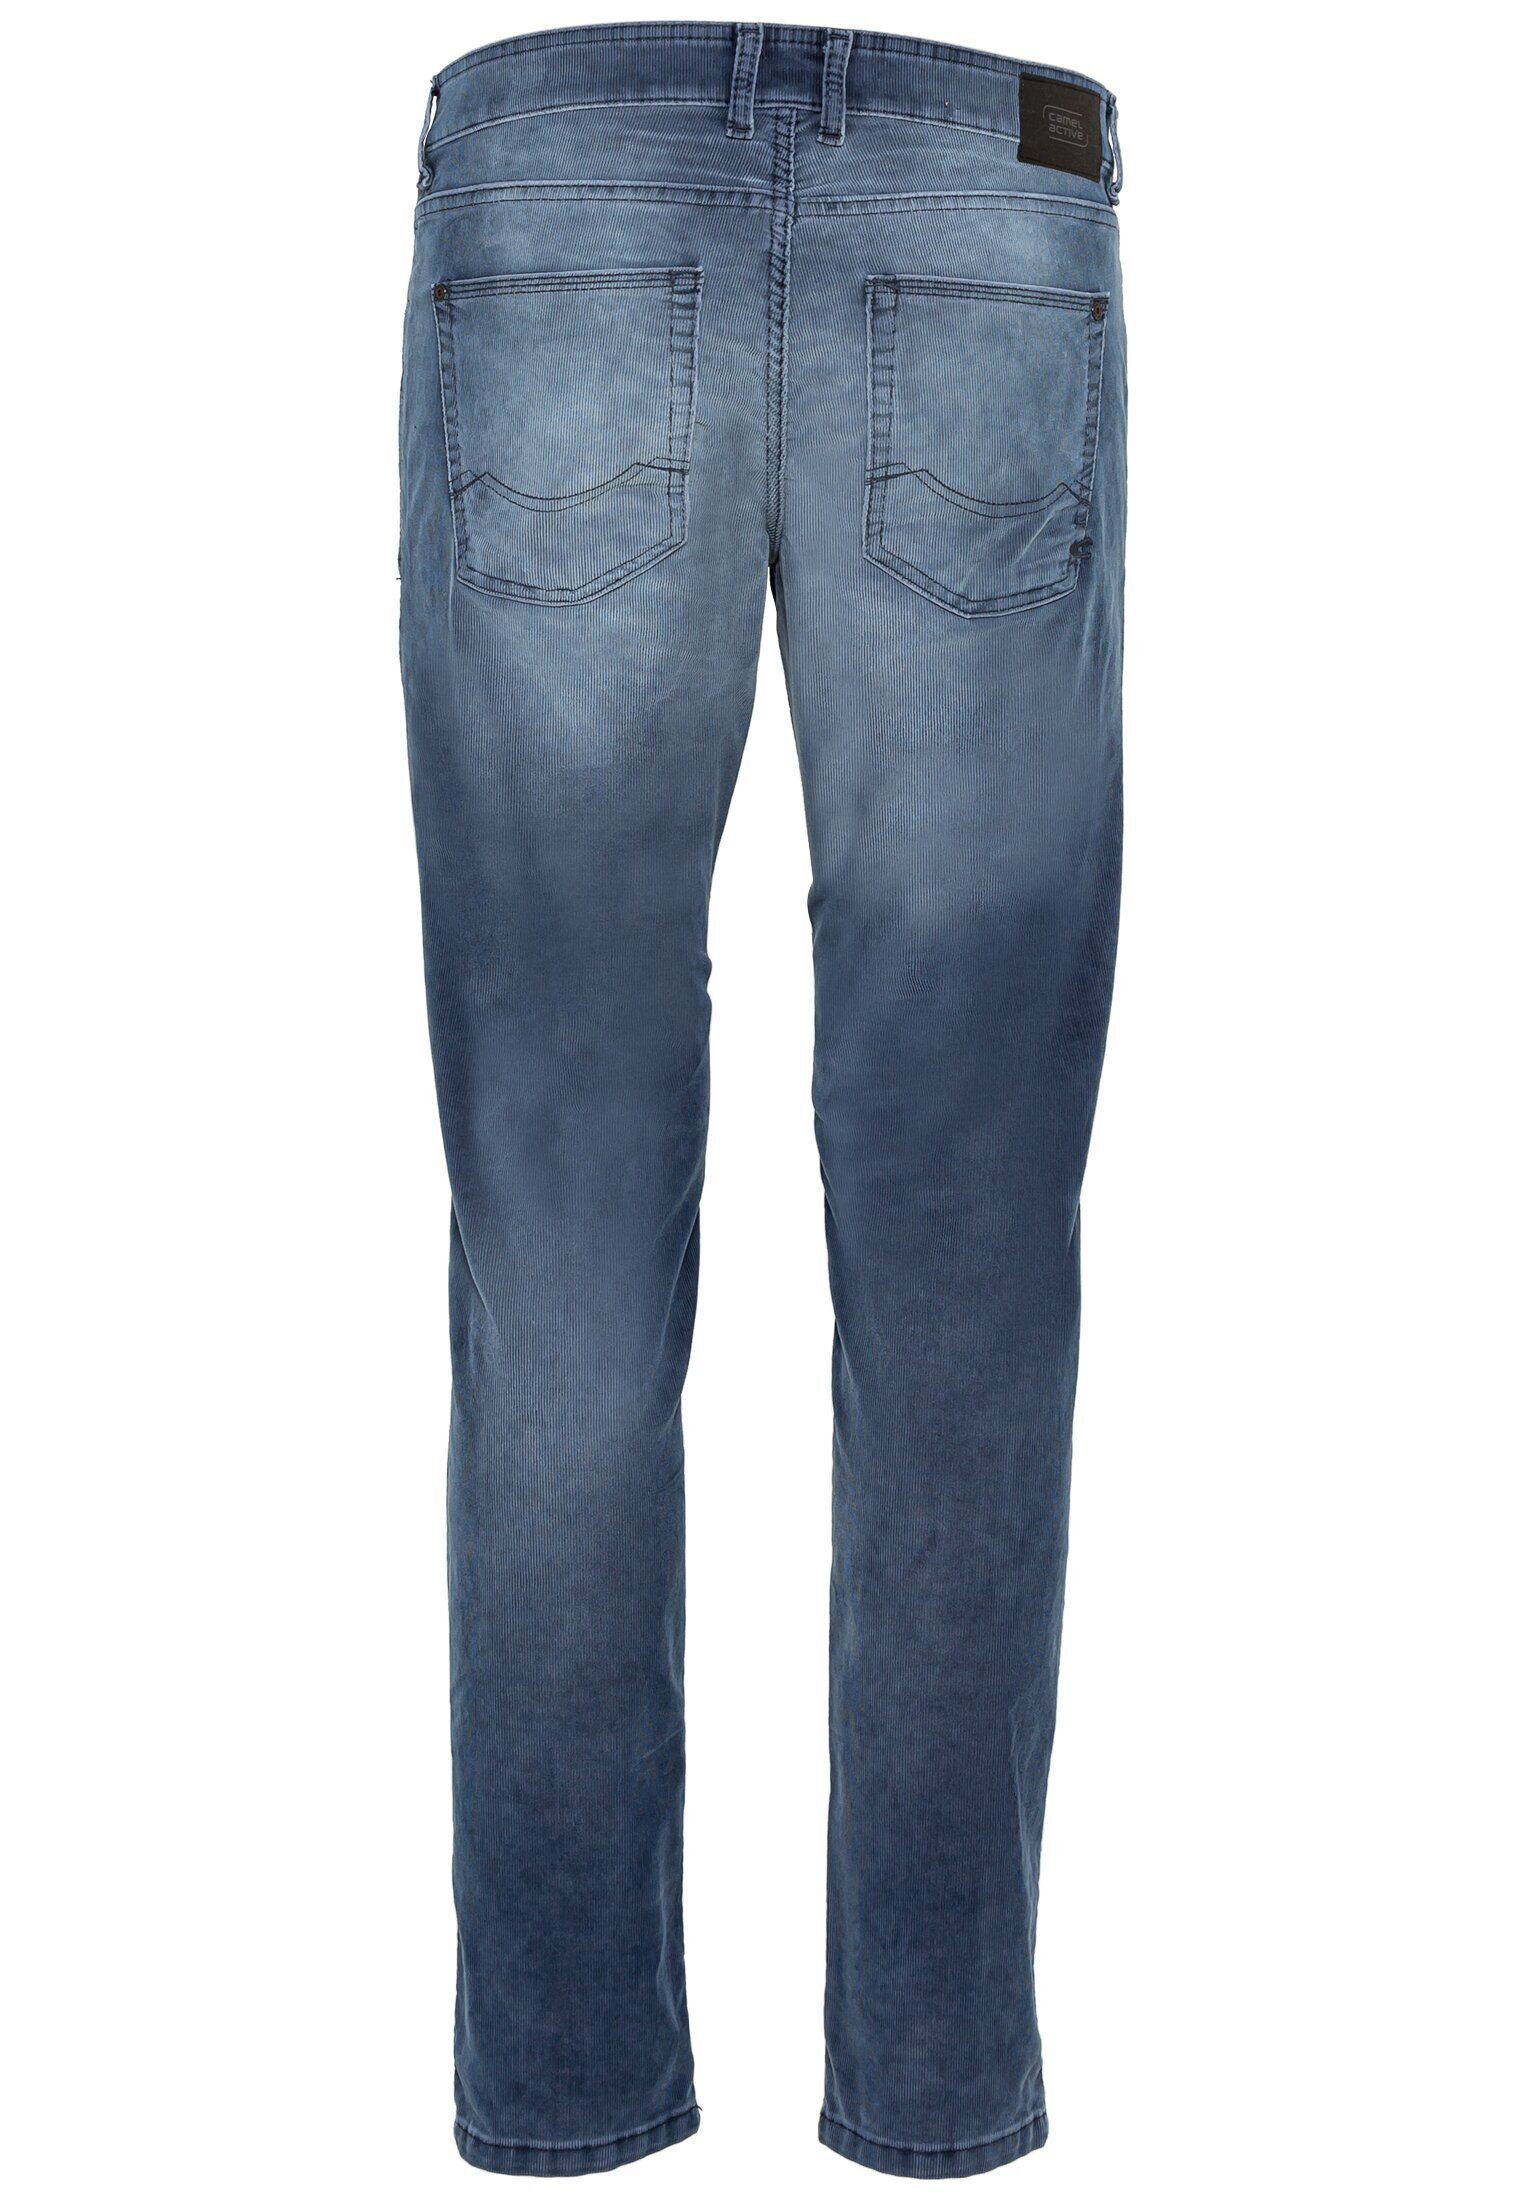 camel active 5-Pocket-Jeans Blau Slim Fit Cordhose